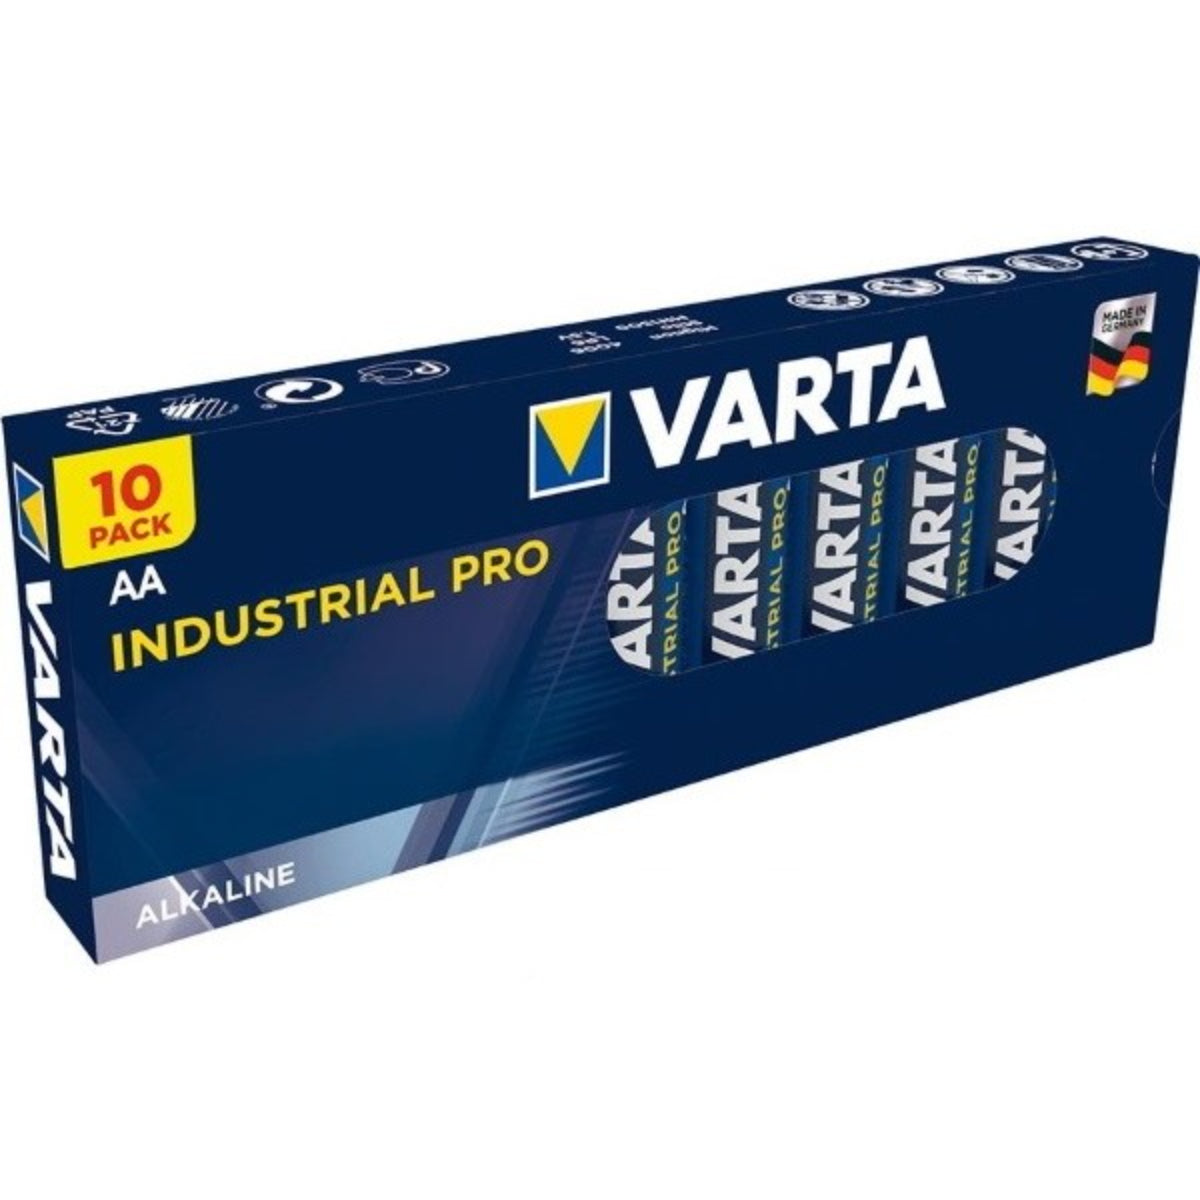 Varta Industrial Alkaline 1.5V AA Battery (Min order 10 or multples of 10)